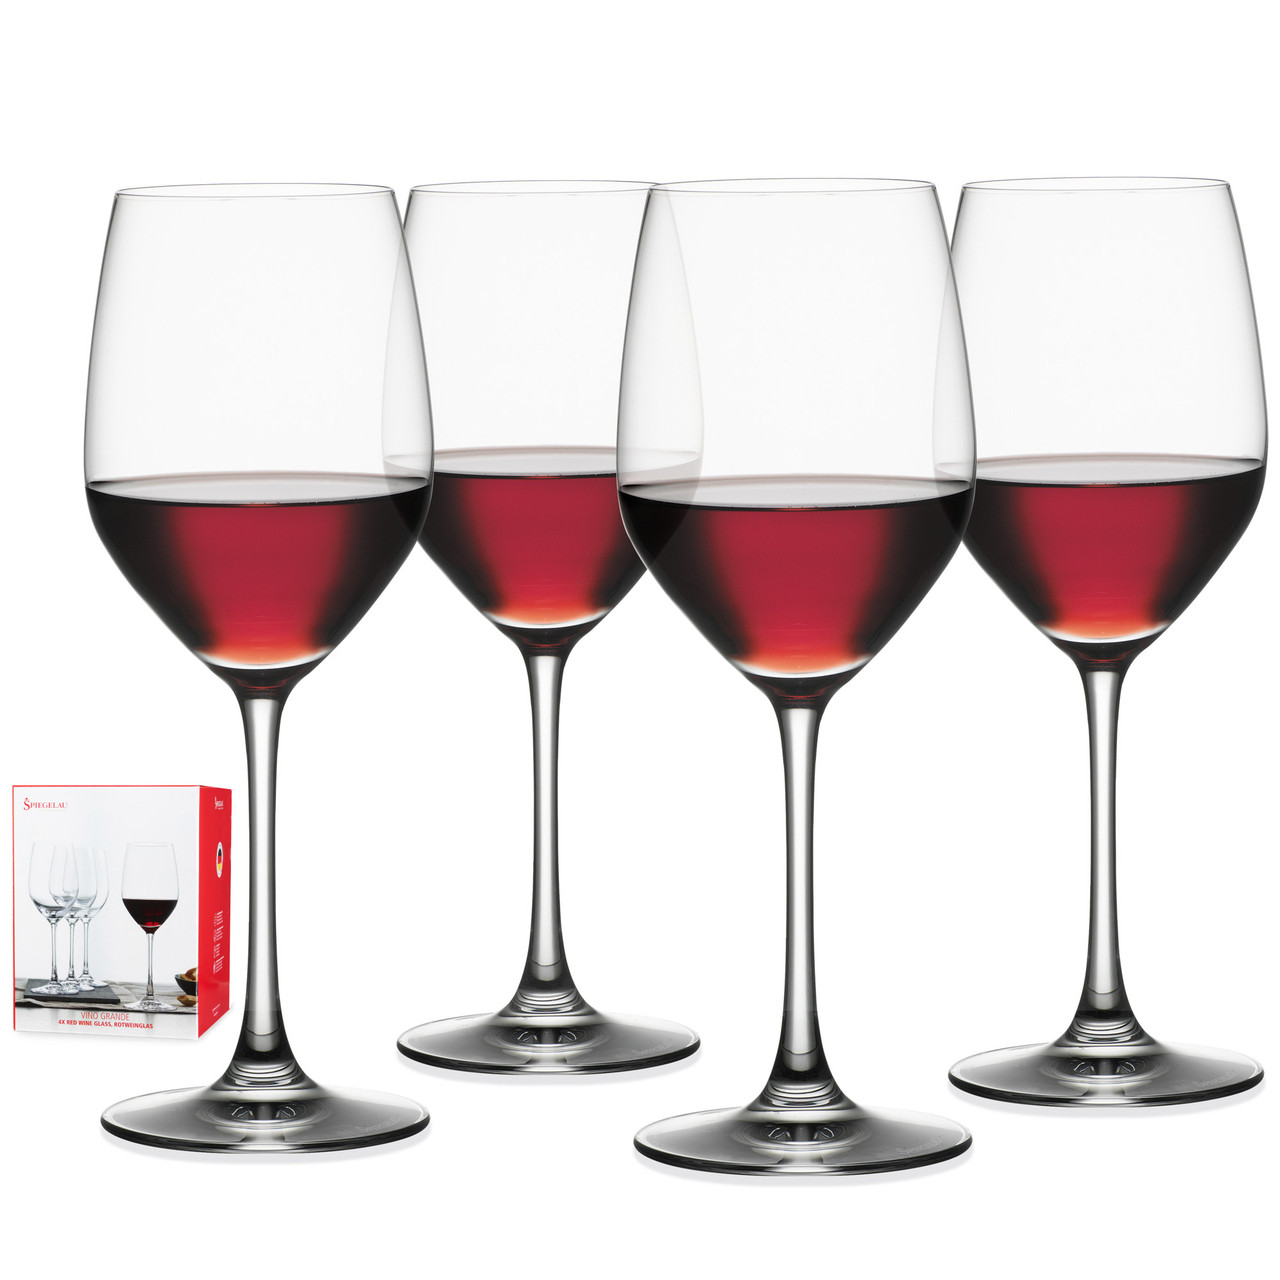 Spiegelau 15 oz Vino Grande red wine set (set of 4)